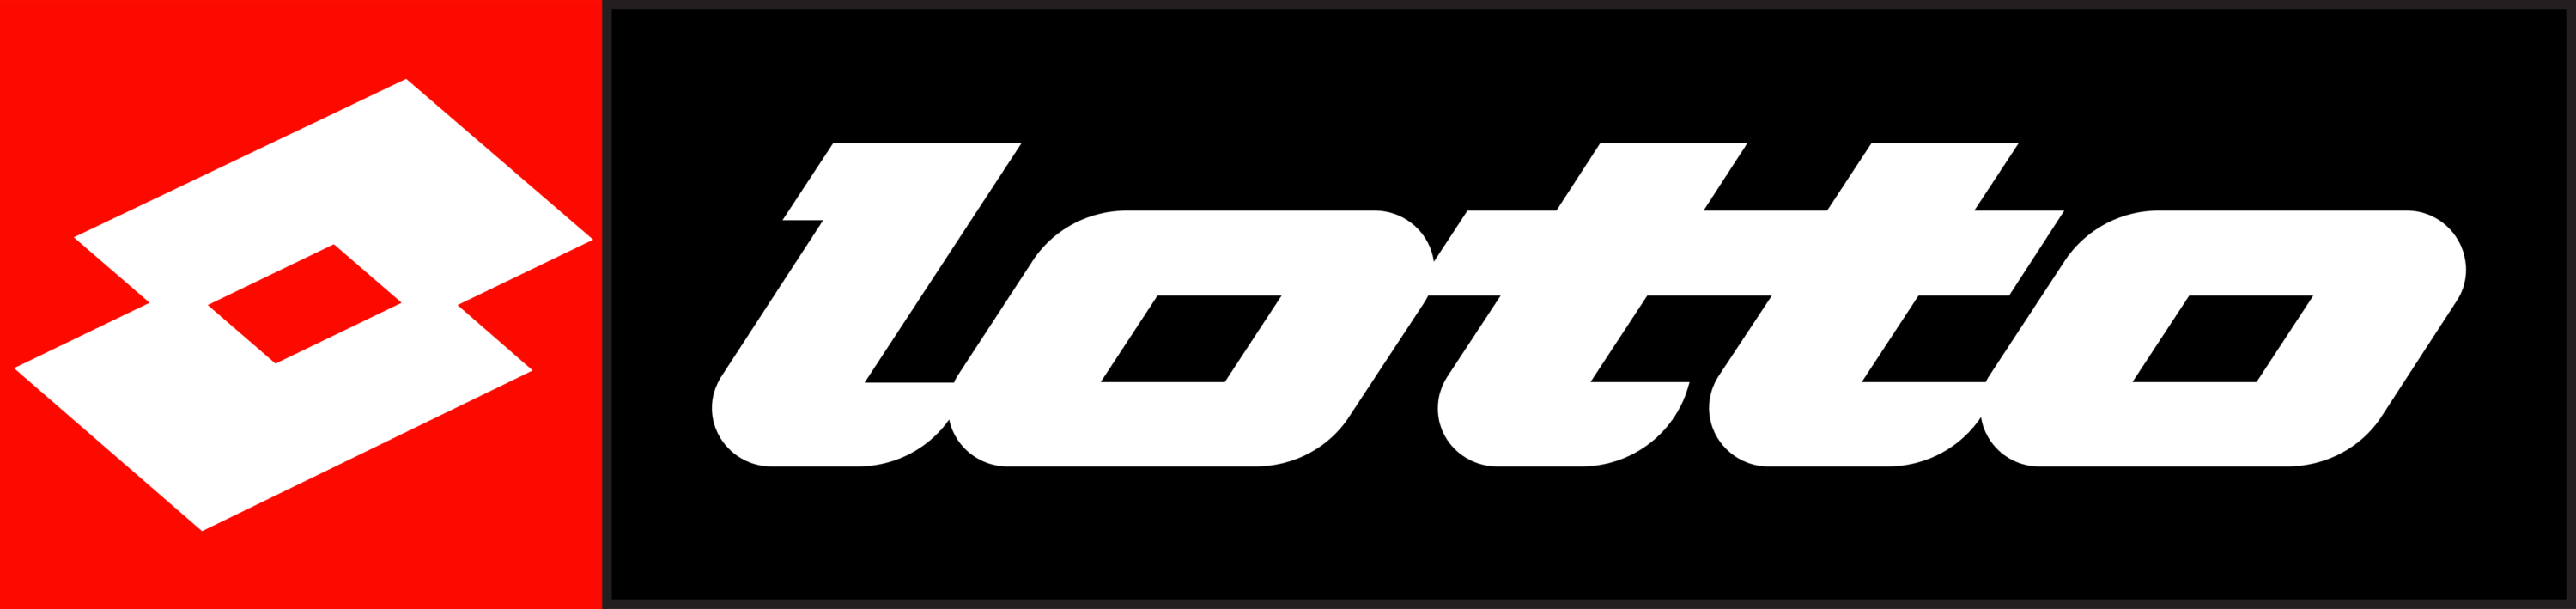 Lotto Sport Italia Logo